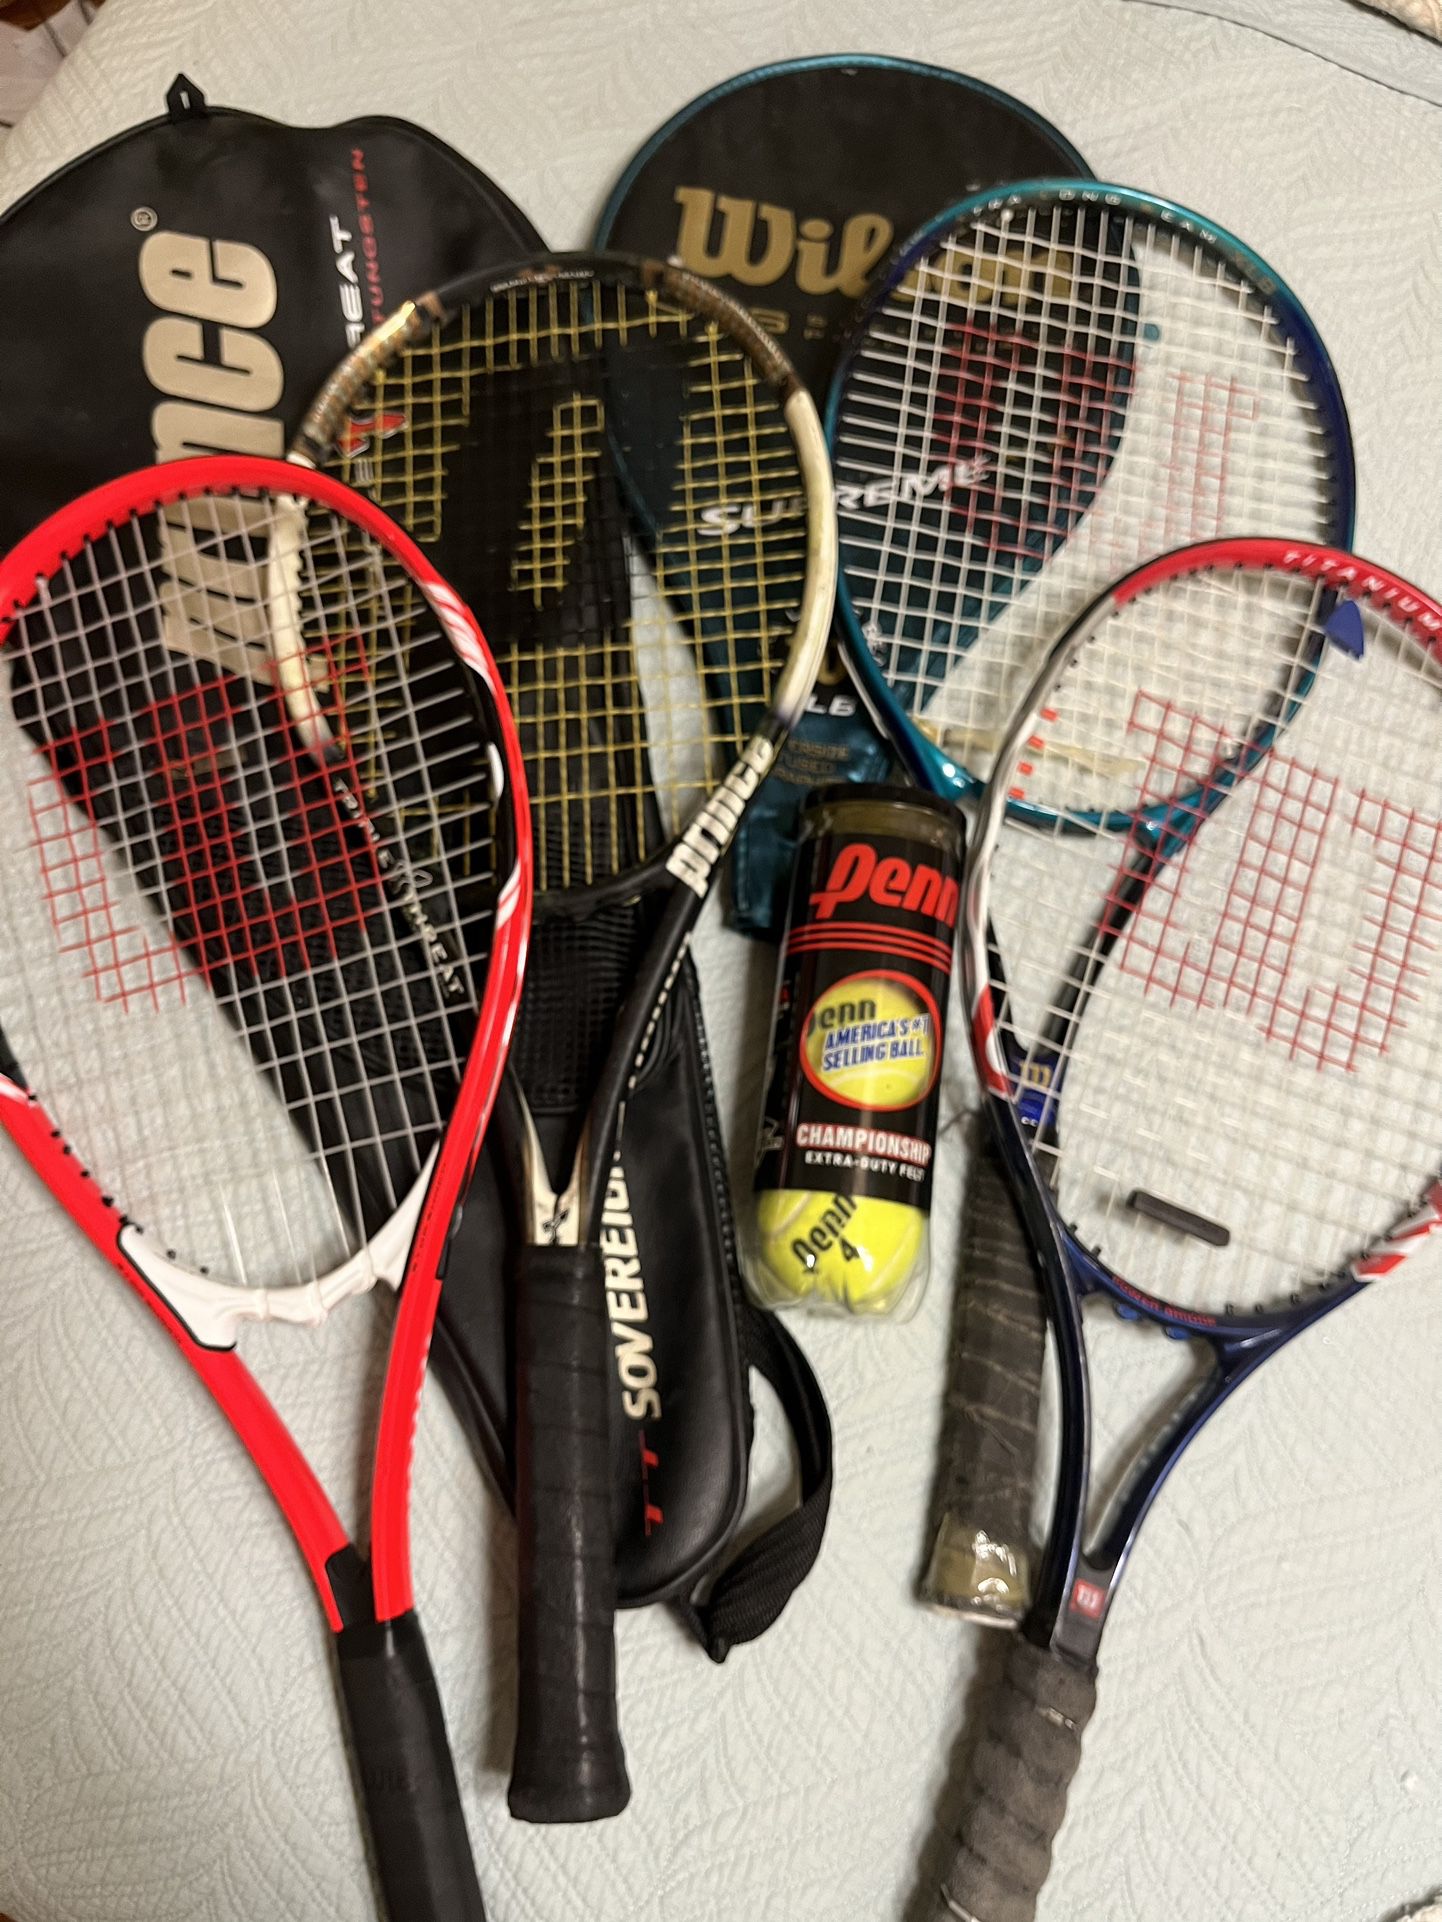 4 Tennis Rackets And New Penn Balls